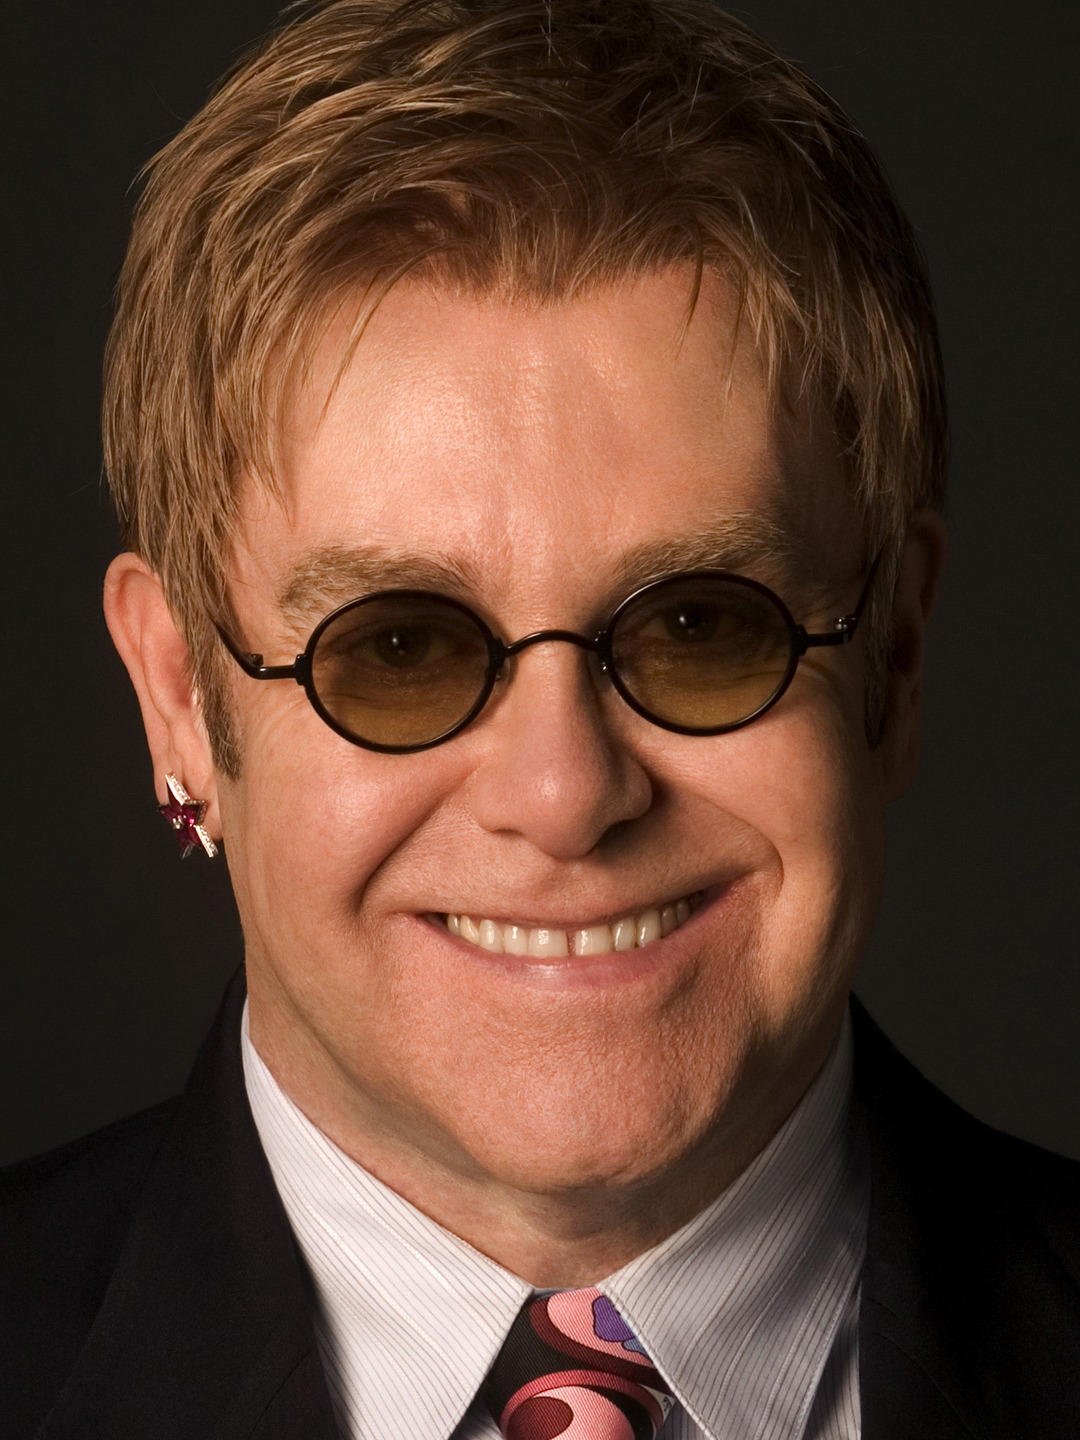 Elton John social media